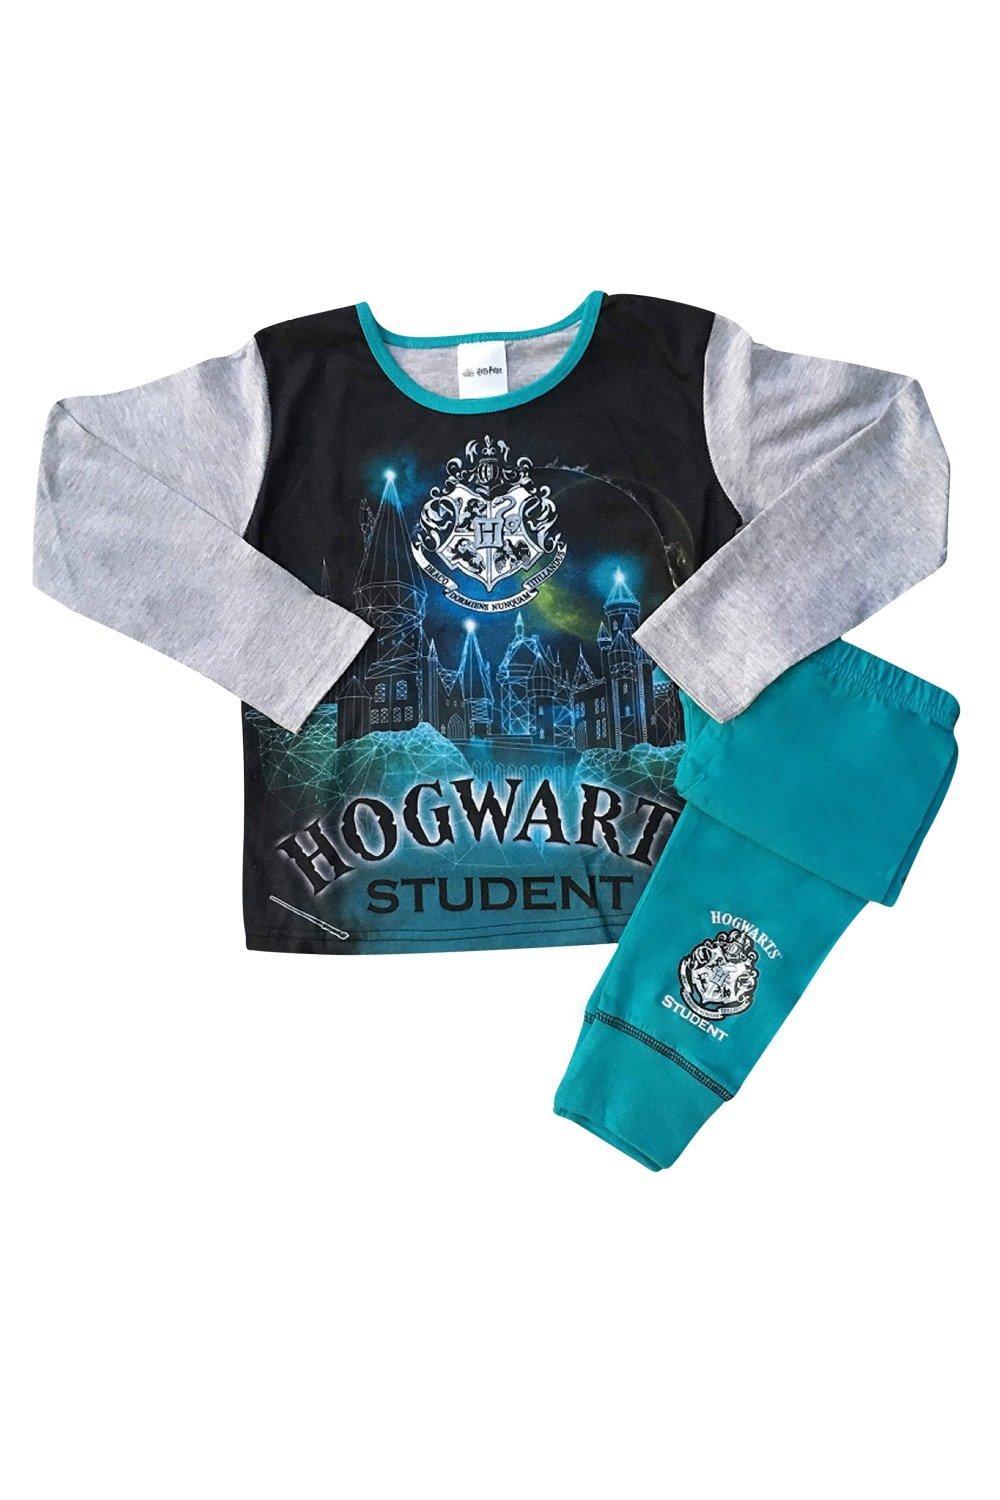 Hogwarts Student Long Pyjama Set